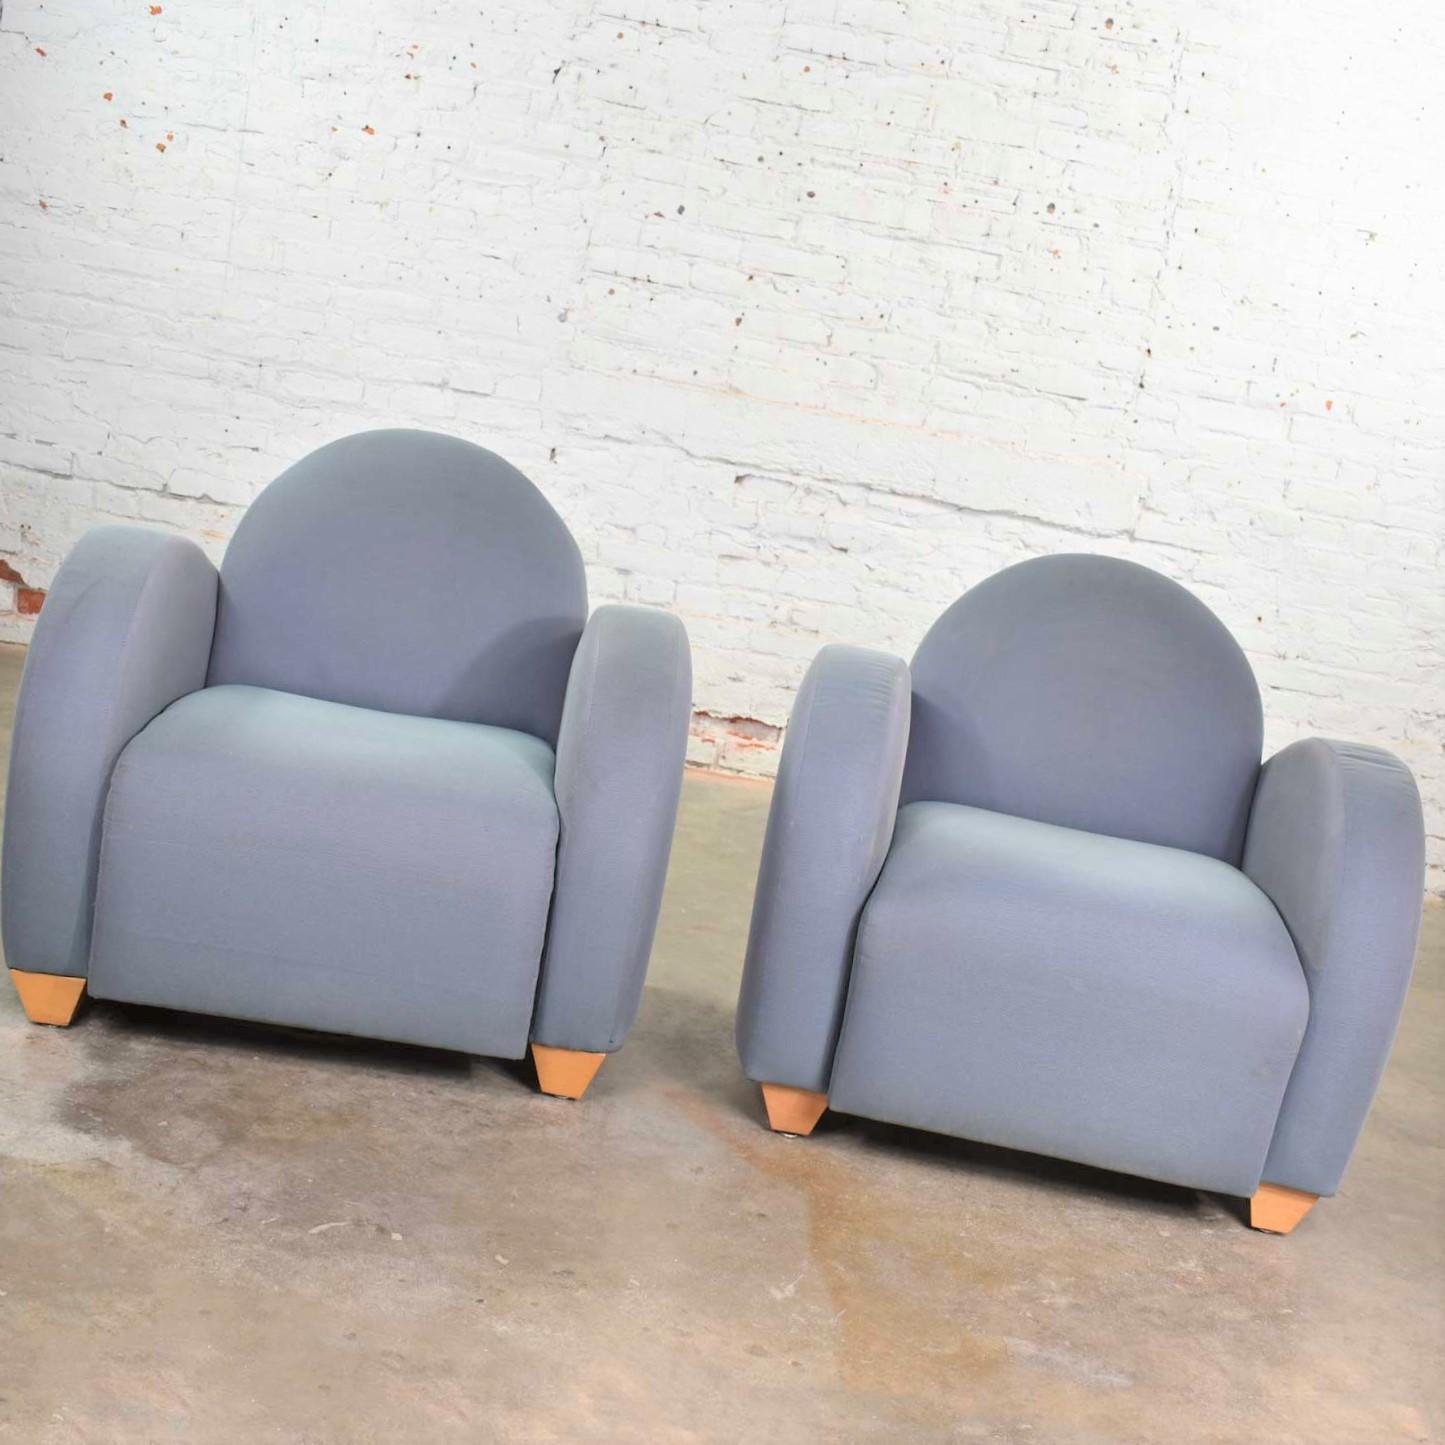 Nous proposons ici un grand nombre de fauteuils club ou de chaises longues postmodernes conçus par Michael Graves et produits par David Edward Company. Nous avons fixé le prix de ces chaises à l'unité, mais vous pouvez en acheter plusieurs. Il y a